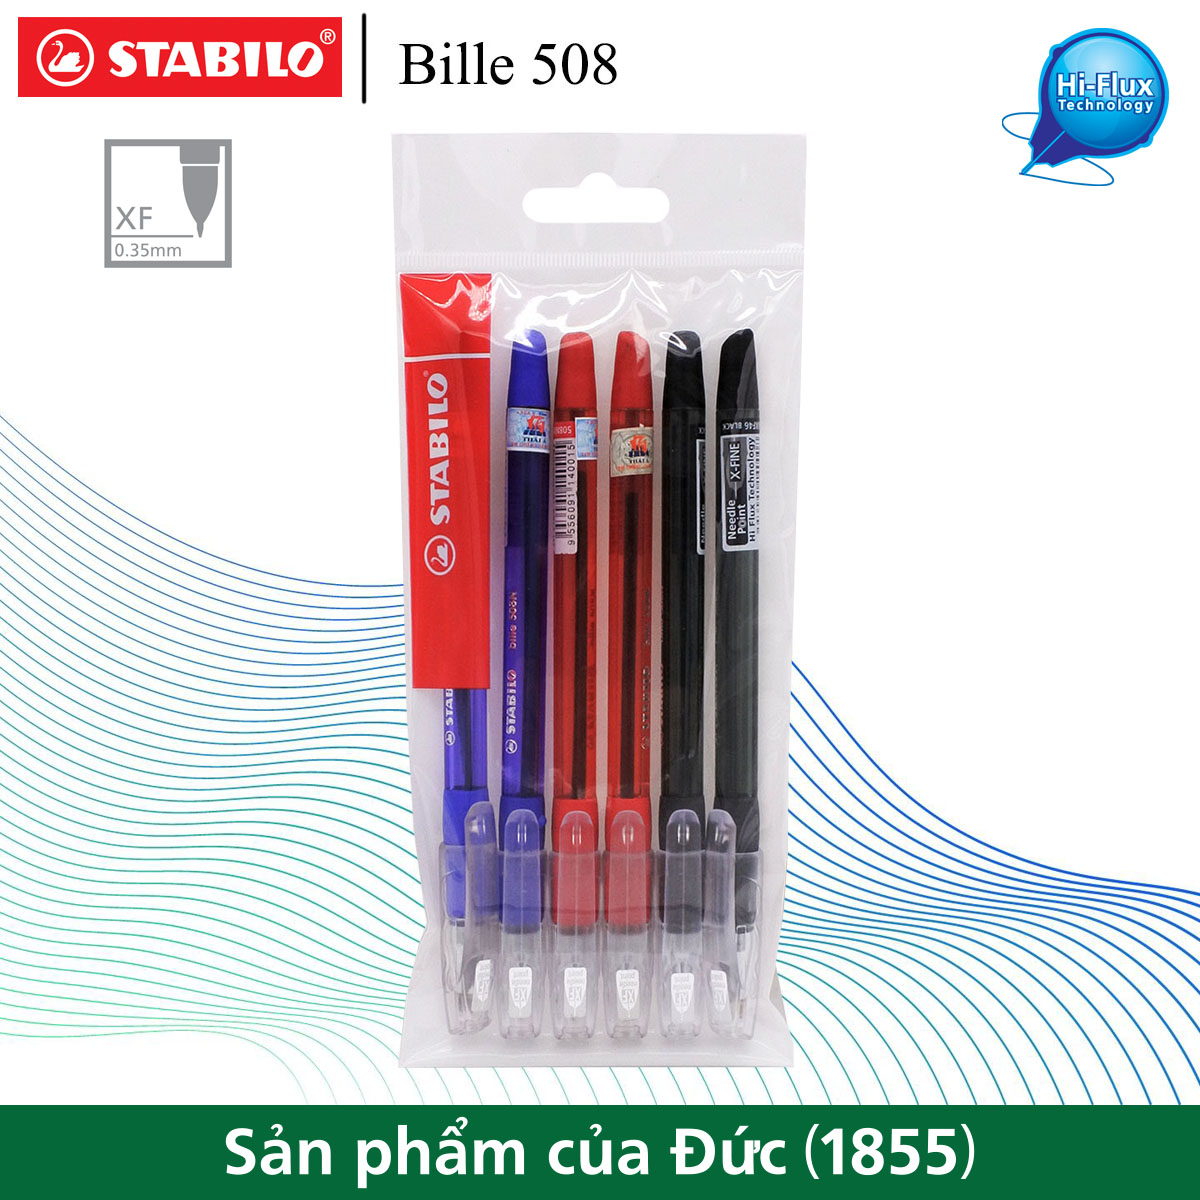 Bộ 6 cây bút bi STABILO Bille 508NXF nét 0.5mm